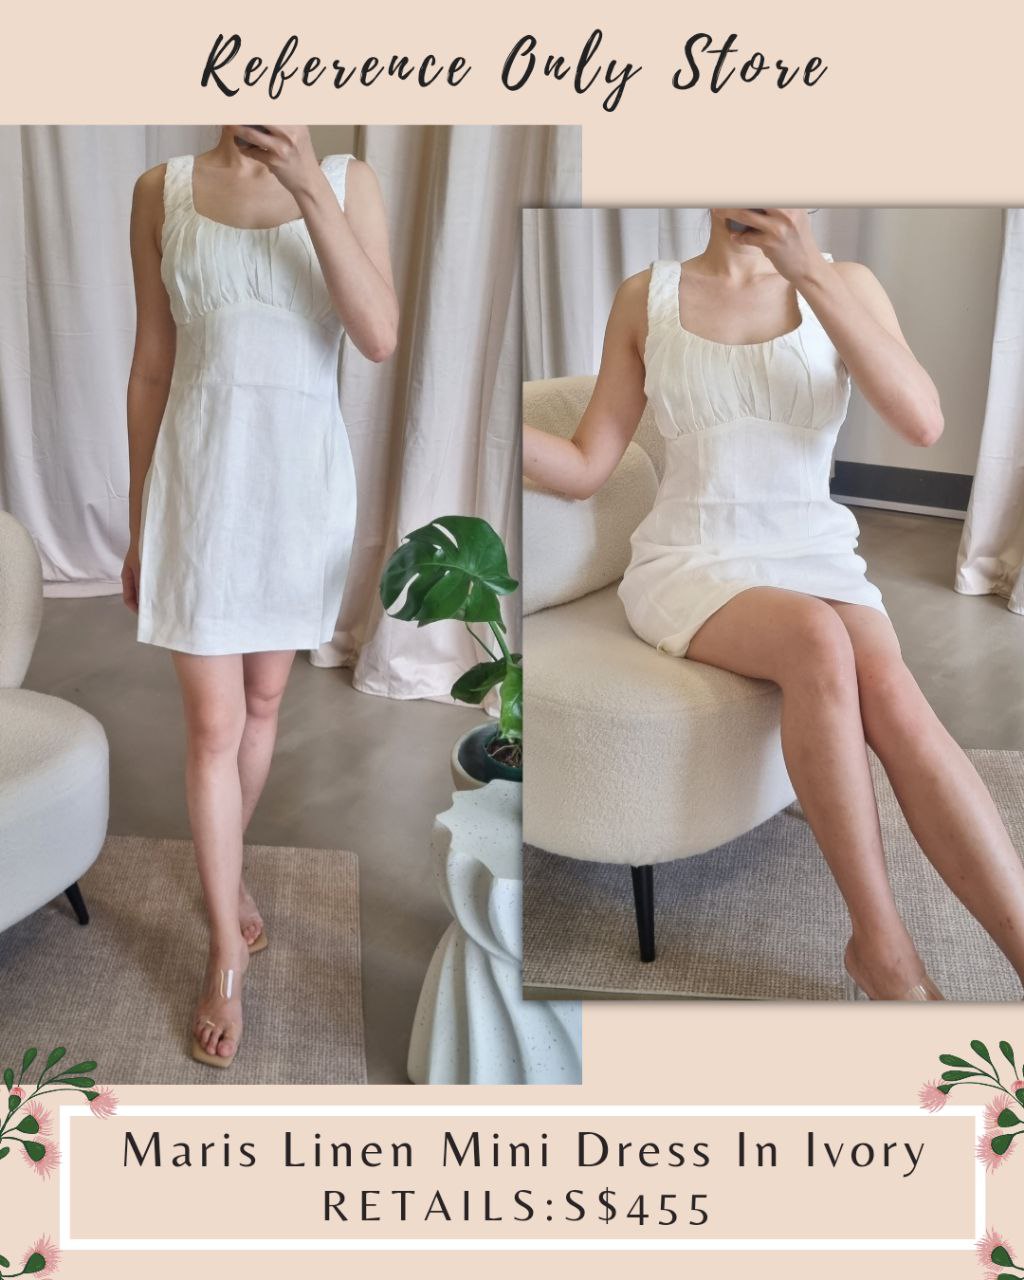 MS Maris Linen MinI Dress in ivory